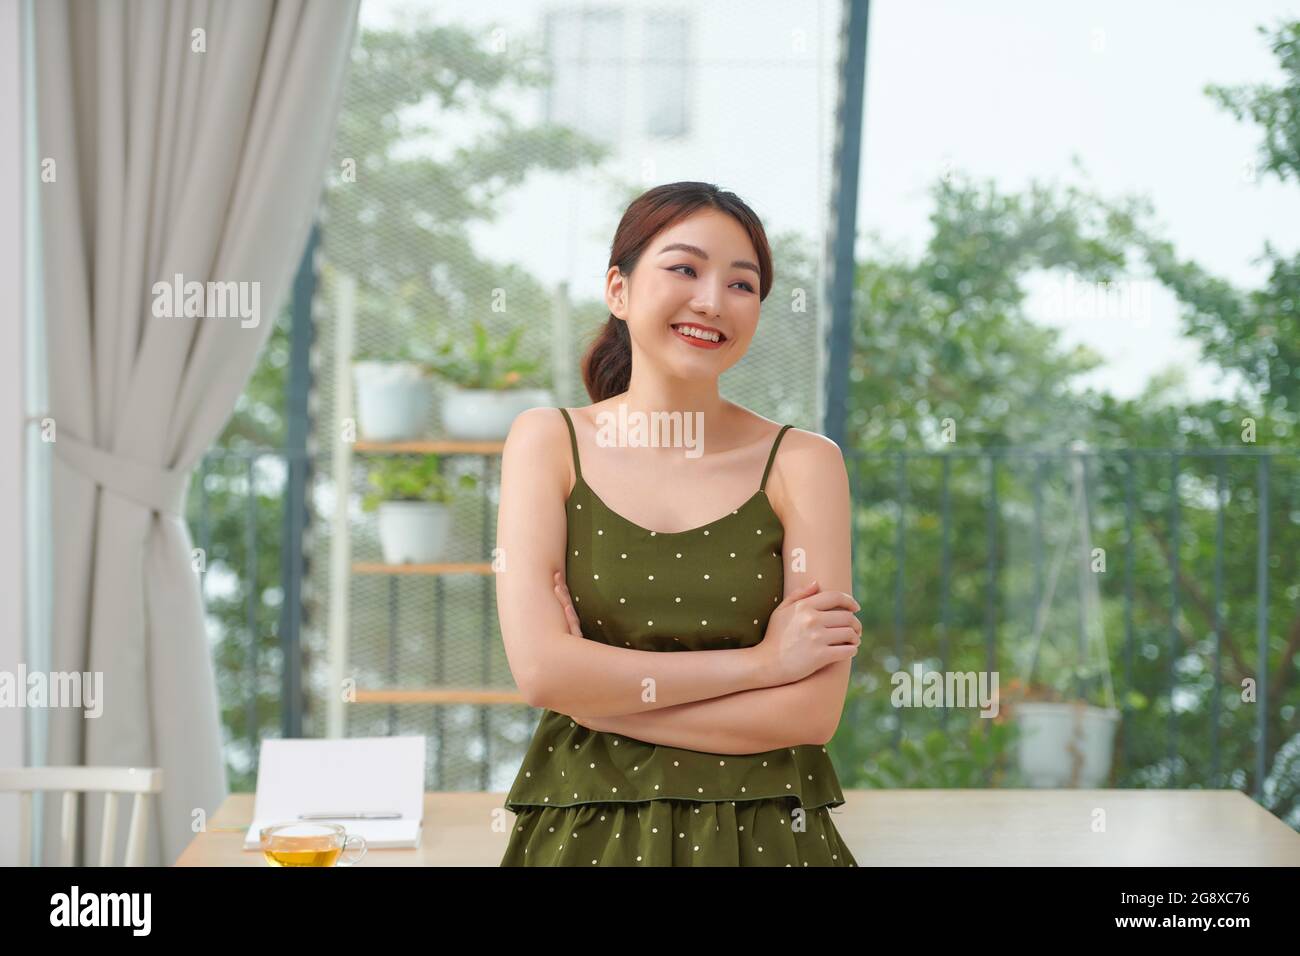 Junge schöne asiatische Frau trägt Polka Dots Kleid stehend aussehende Kamera mit gekreuzten Armen Stockfoto